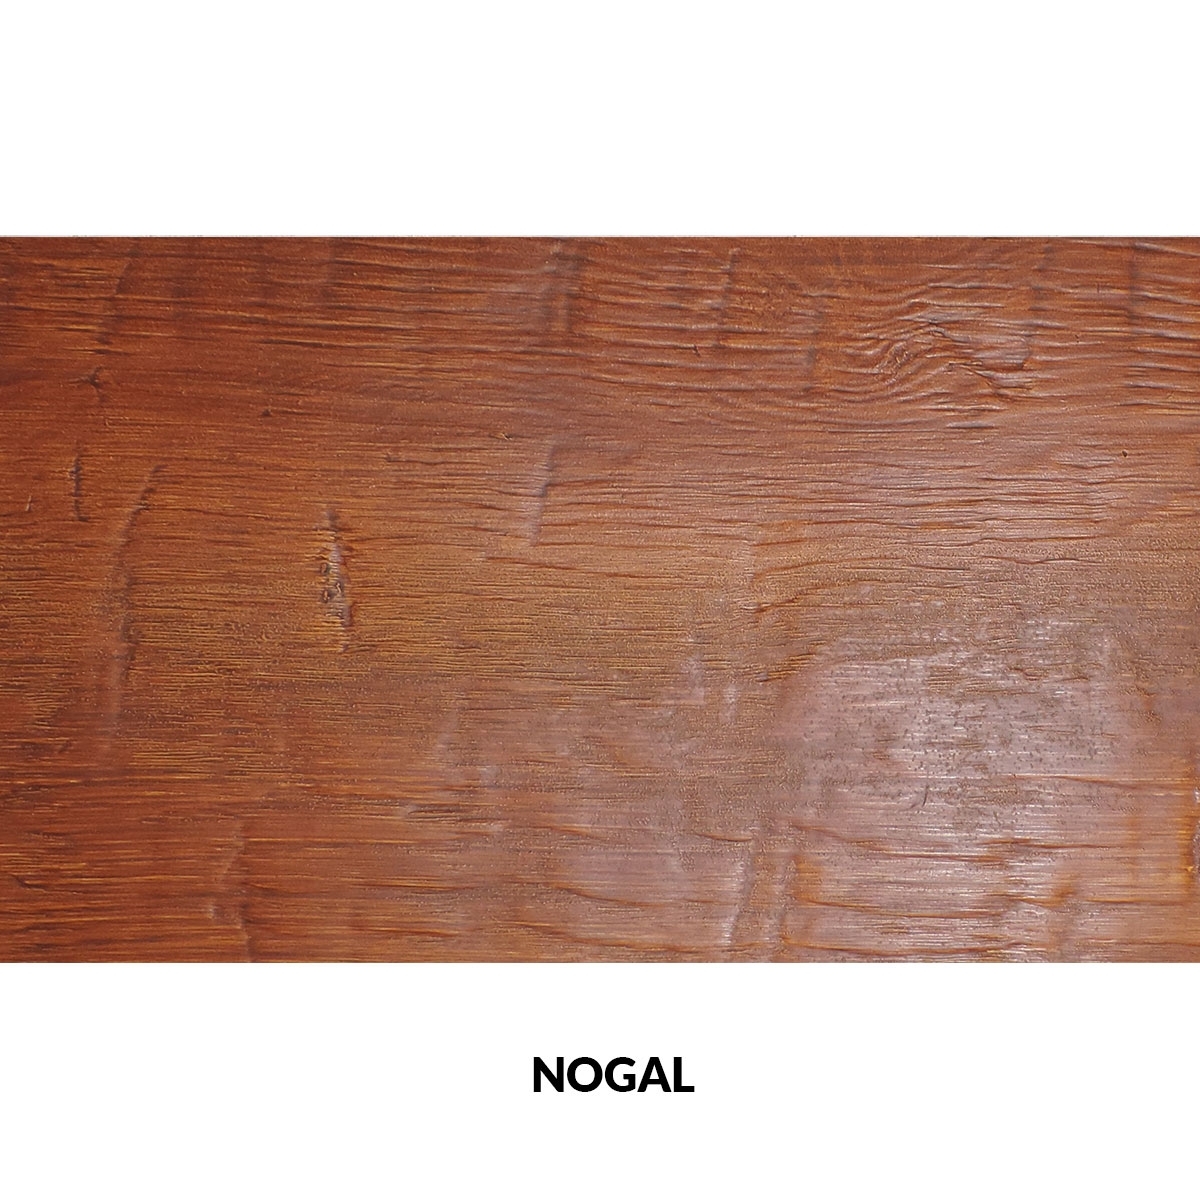 Panel rústico sin lamas imitación madera de 300x62cm nogal